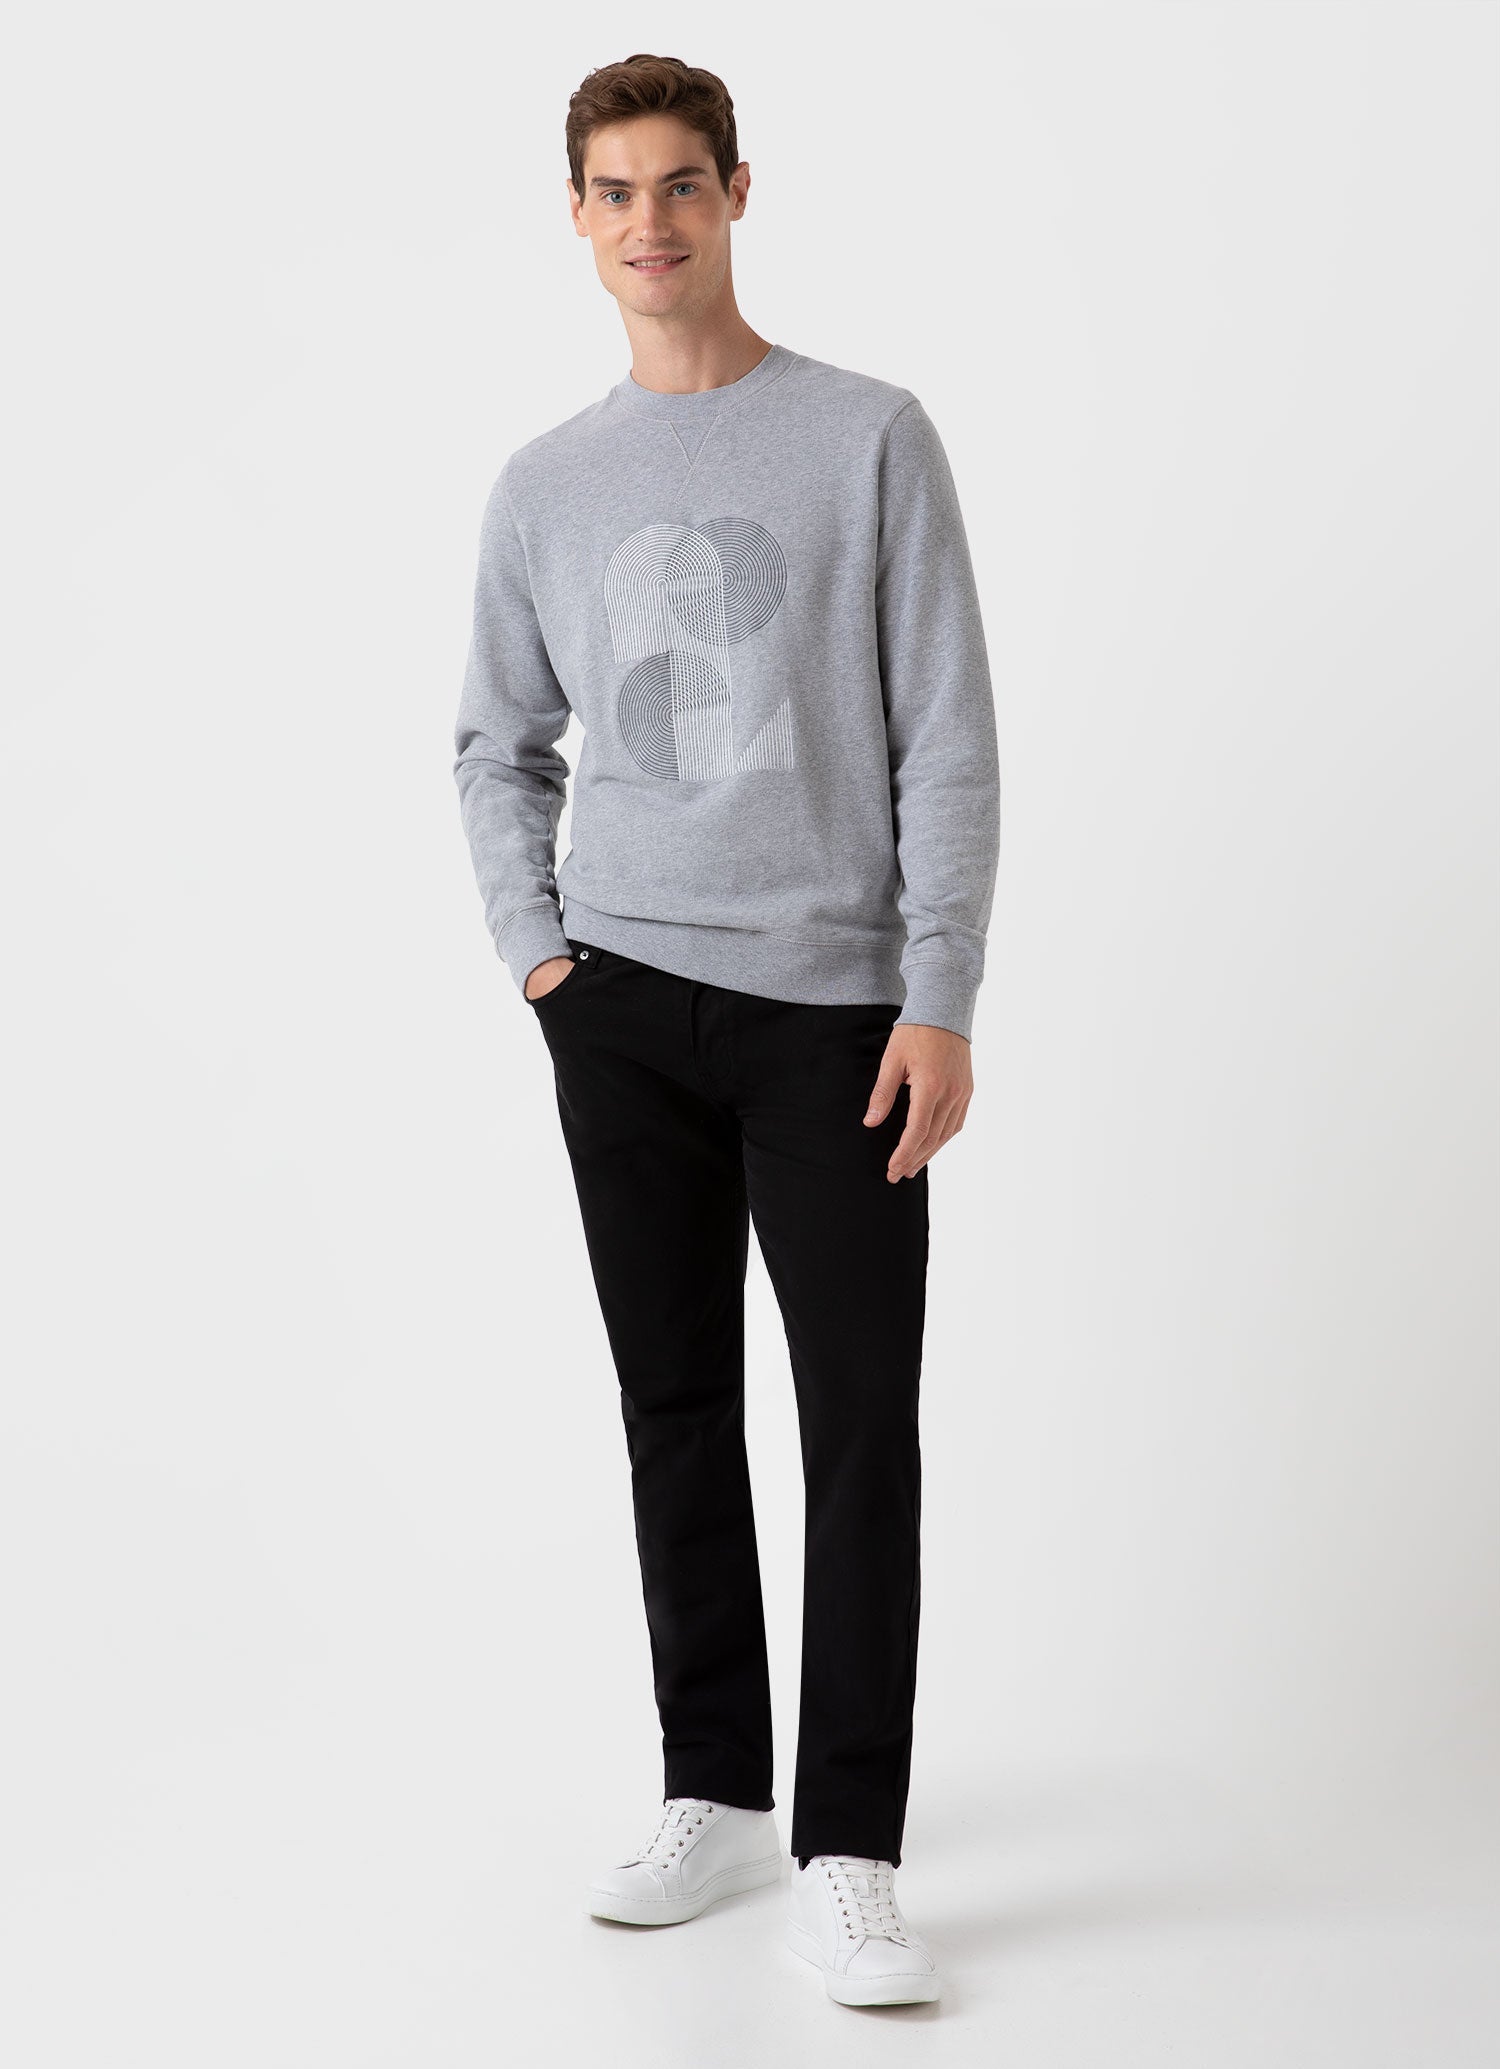 Men's Craig Ward Embroidered Sweatshirt in Grey Melange